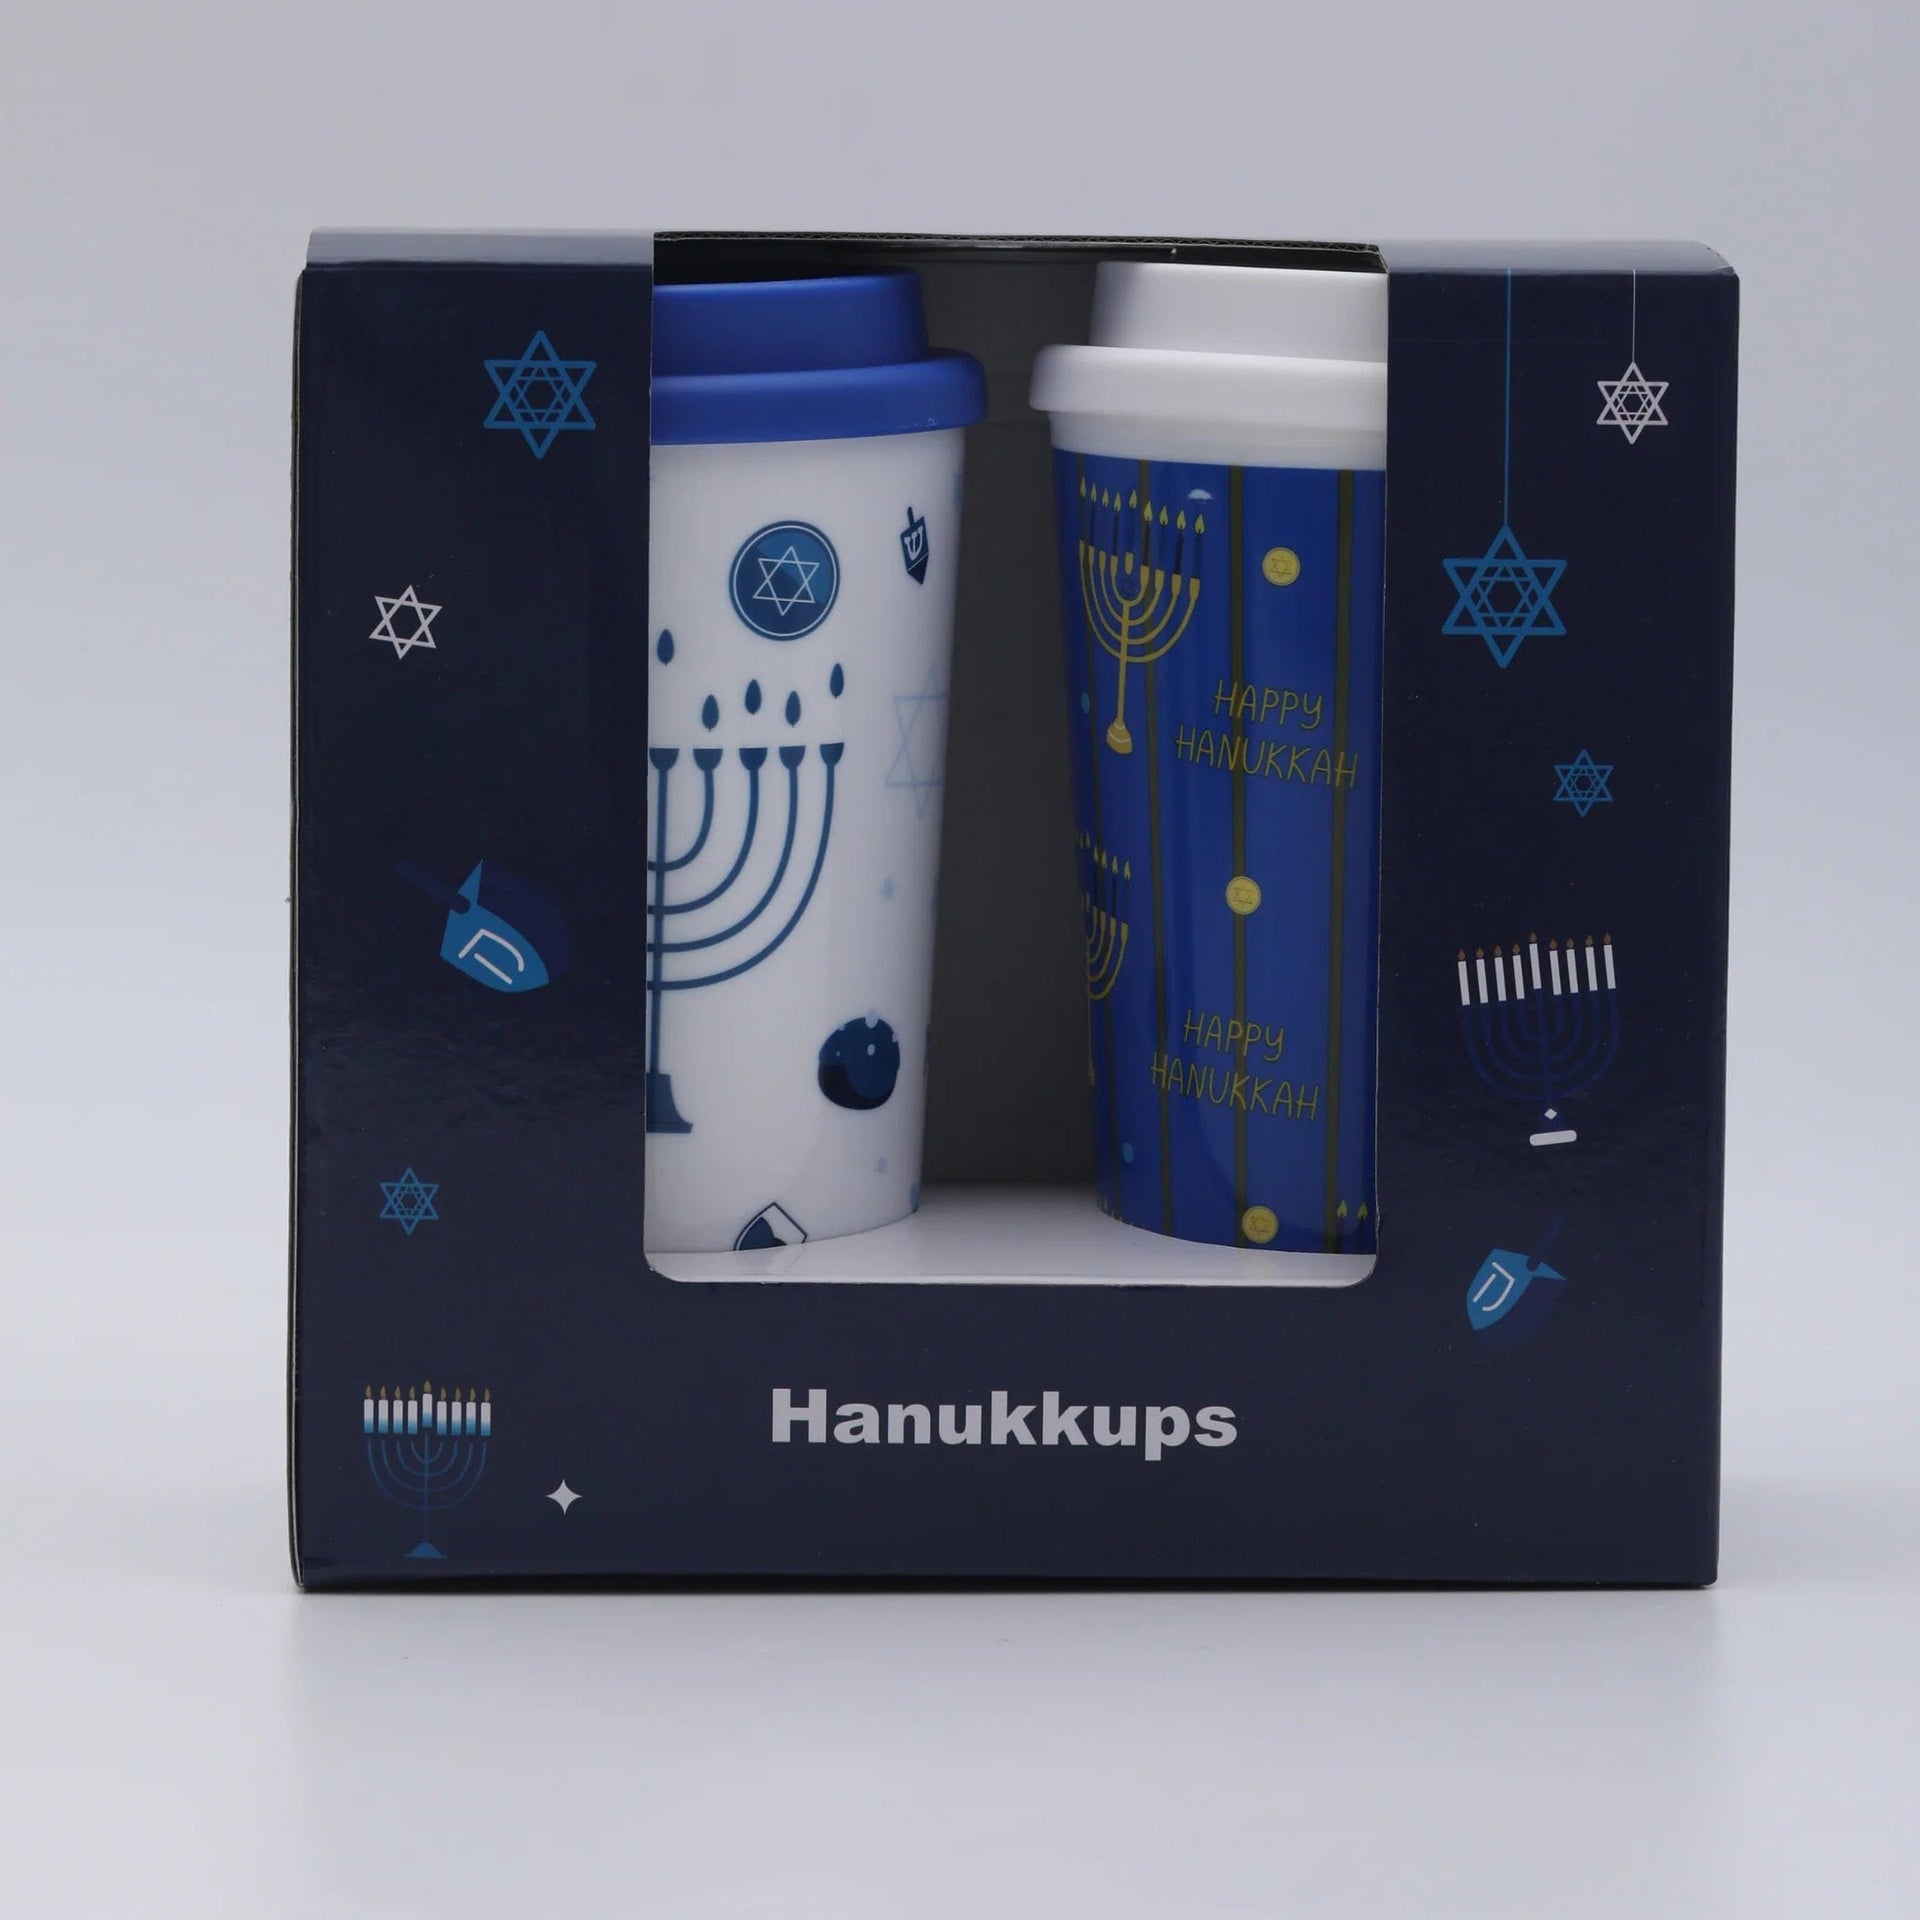 Hanukkah Superstore Mugs Hanukkups Hot and Cold Tumblers